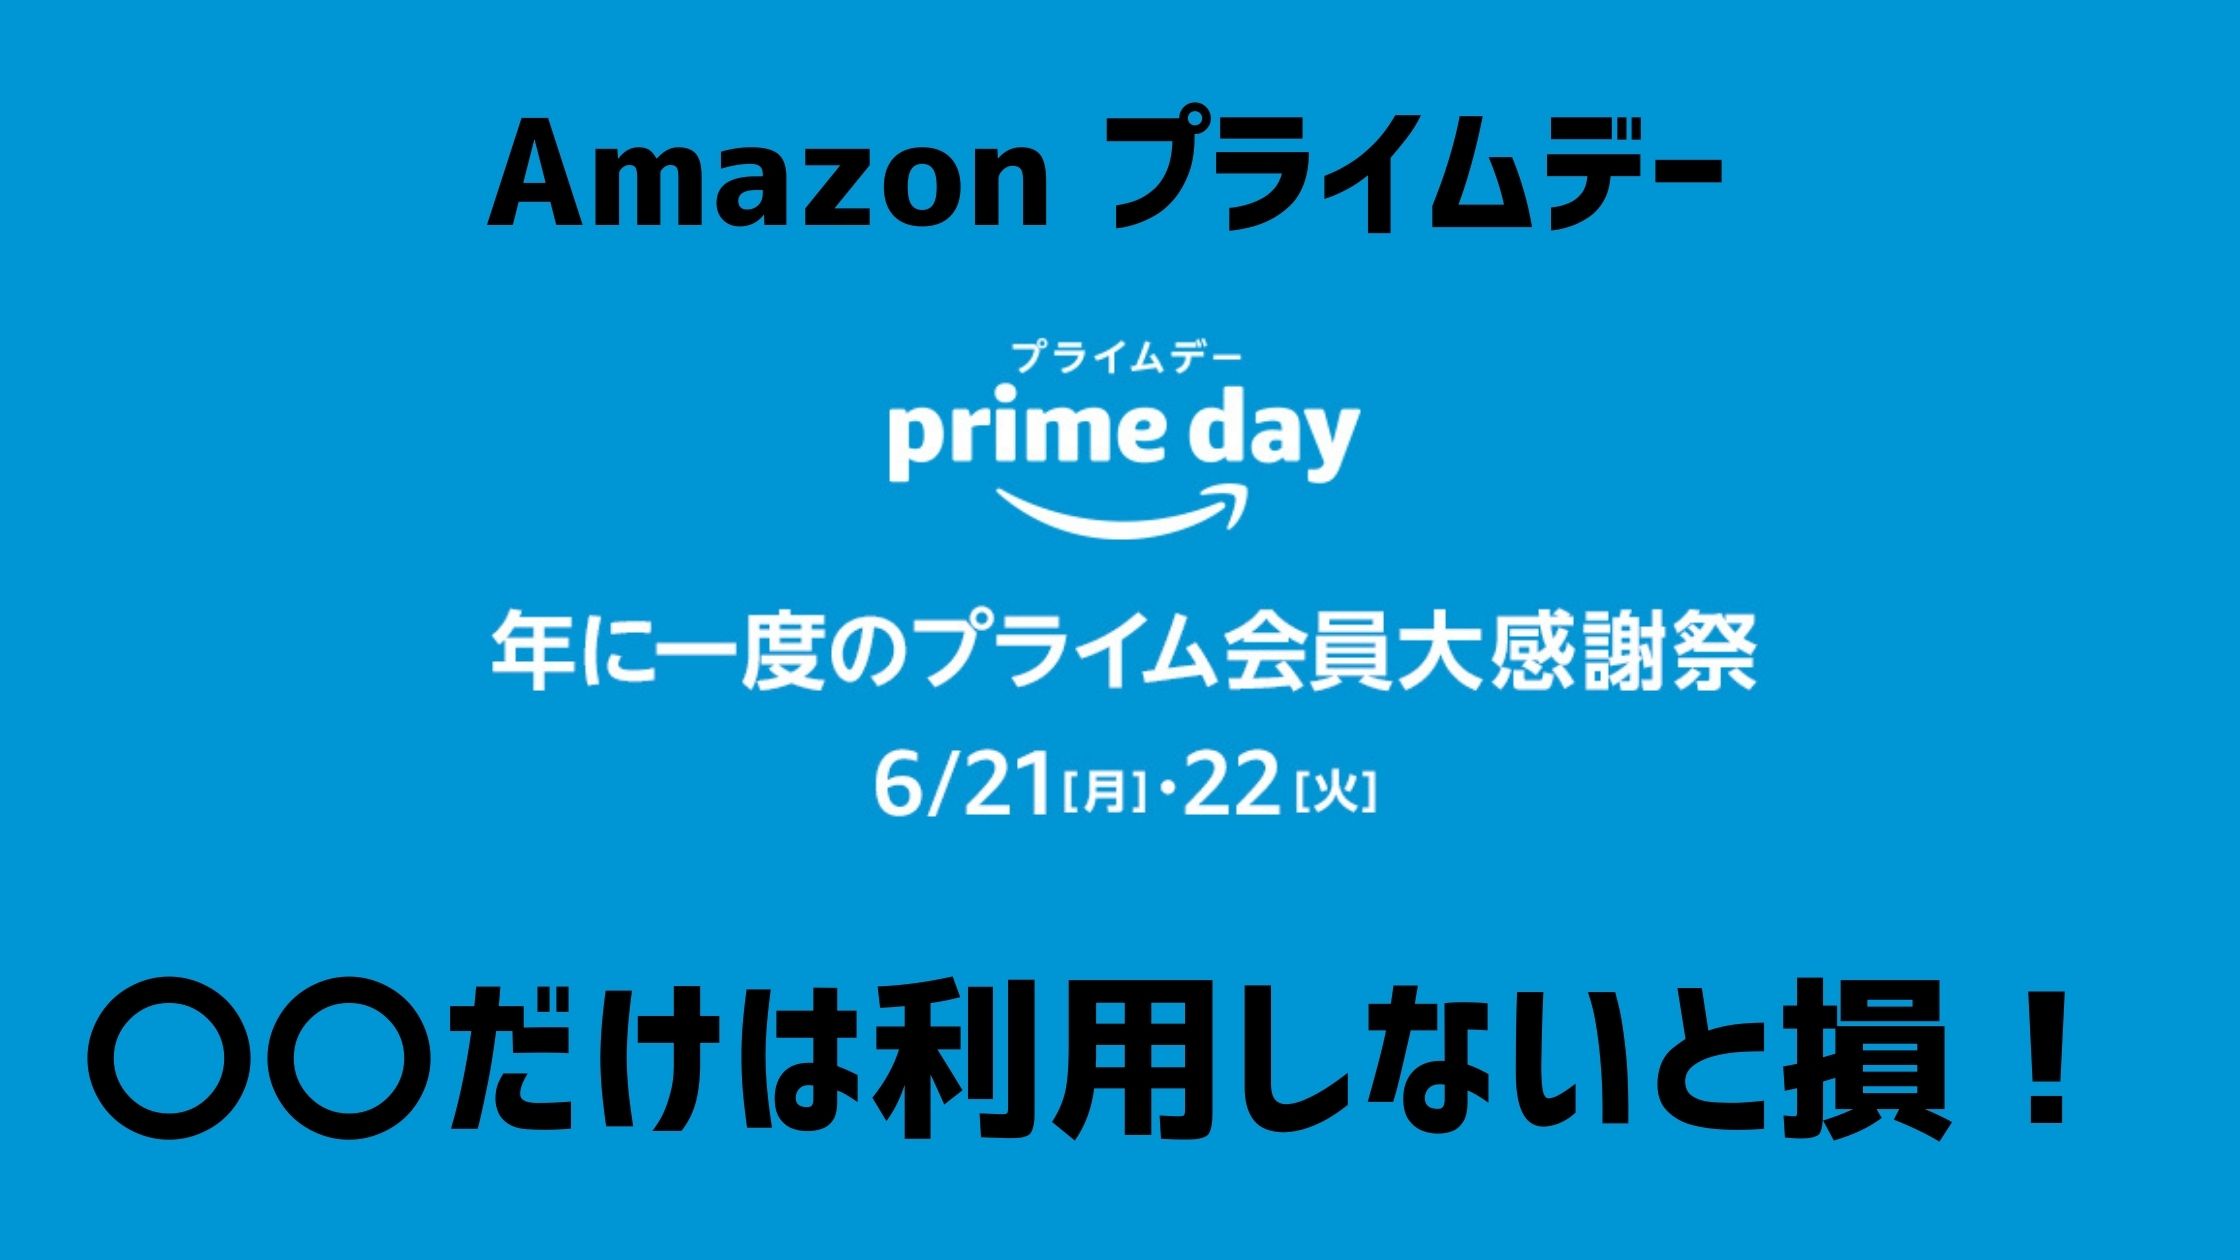 prime day プライムデー アマゾン amazon キャンペーン お得 アマギフ